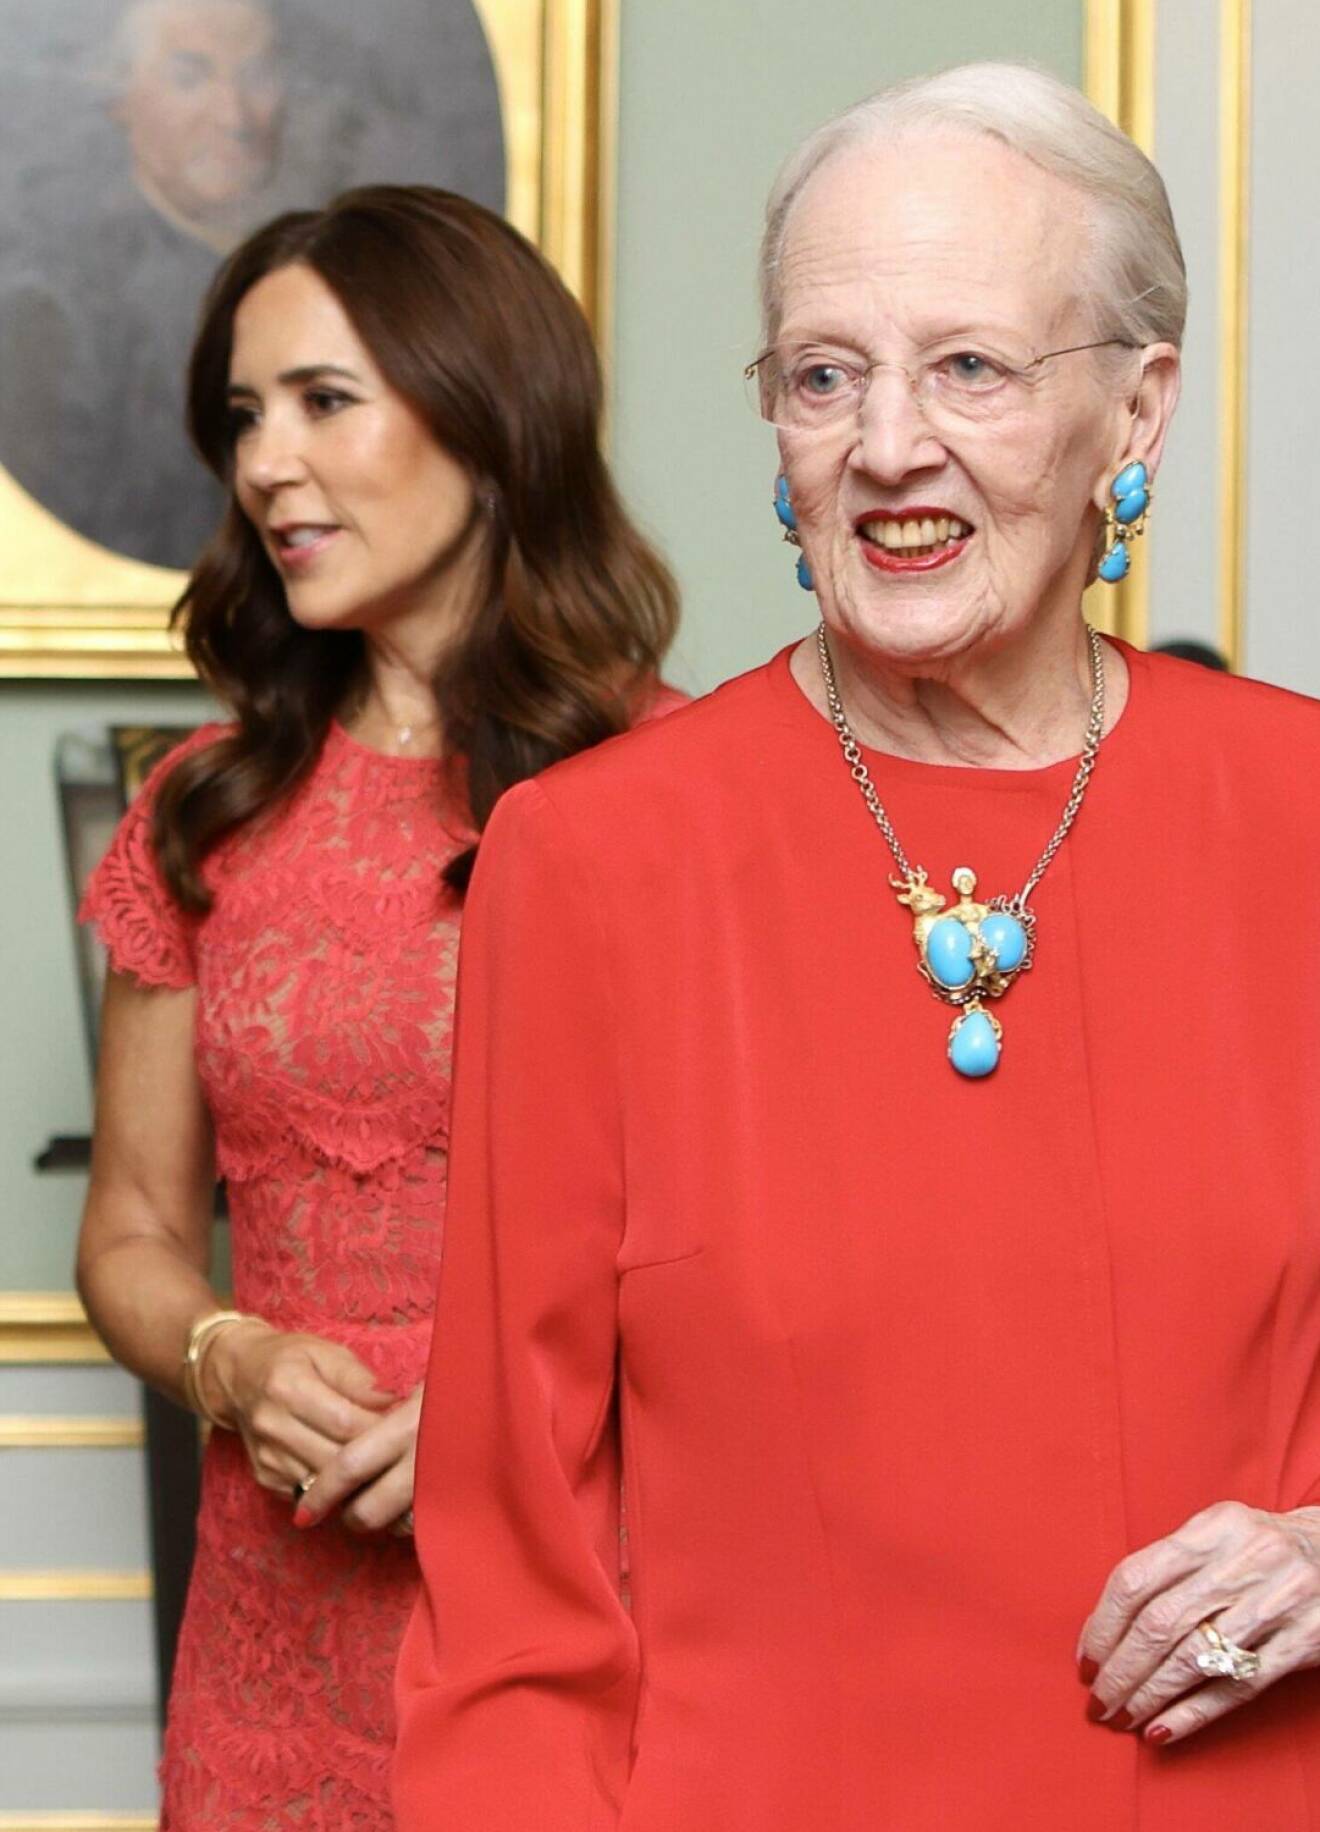 Drottning Margrethe på filmpremiär klädd i rött och med smycken med turkoser